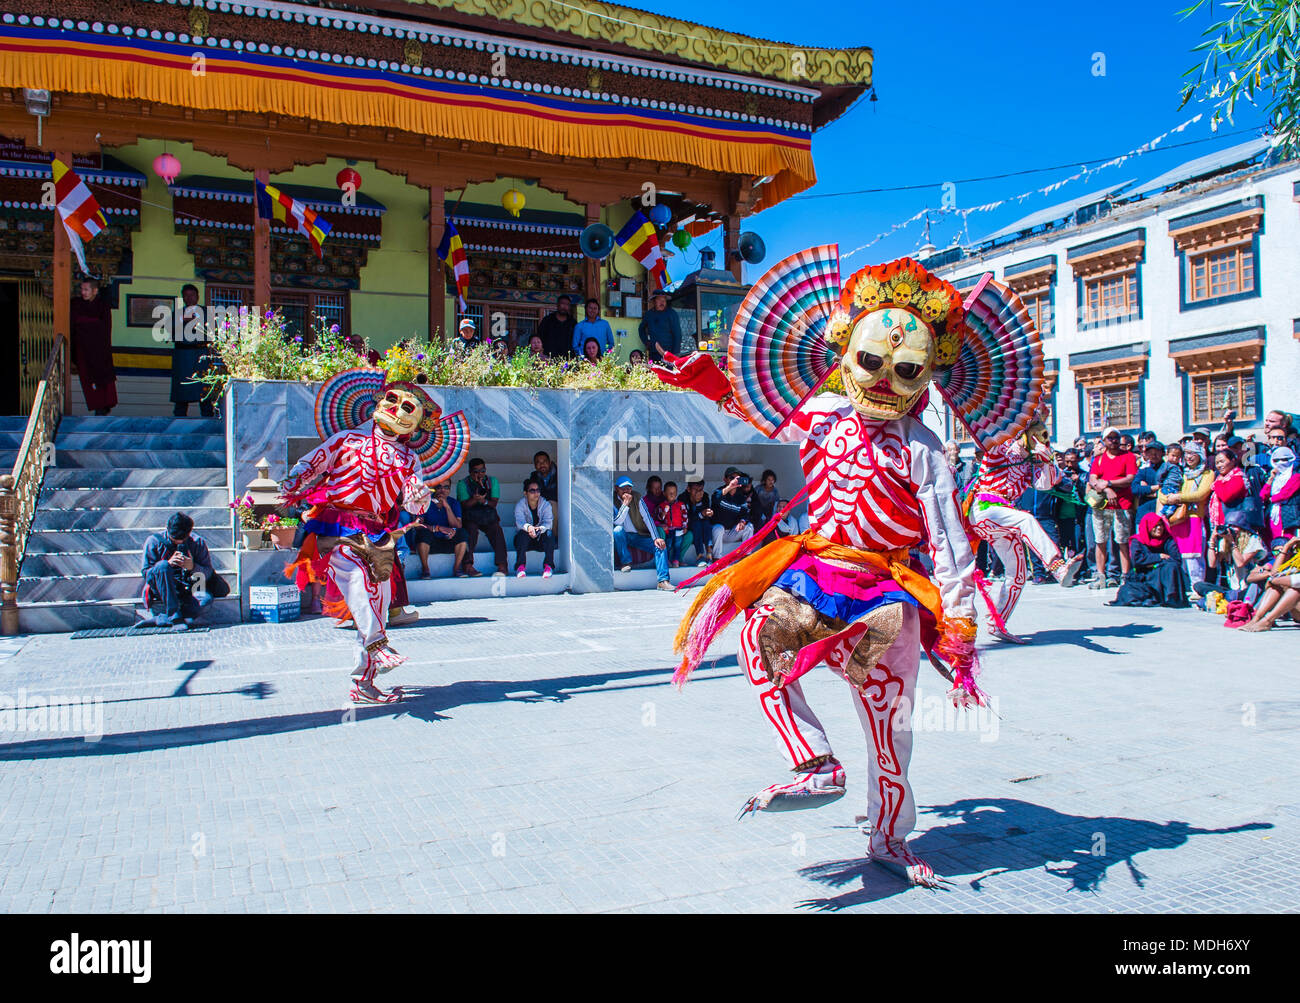 Los monjes budistas realizan Cham durante el Festival de Danza de Ladakh en Leh India Foto de stock